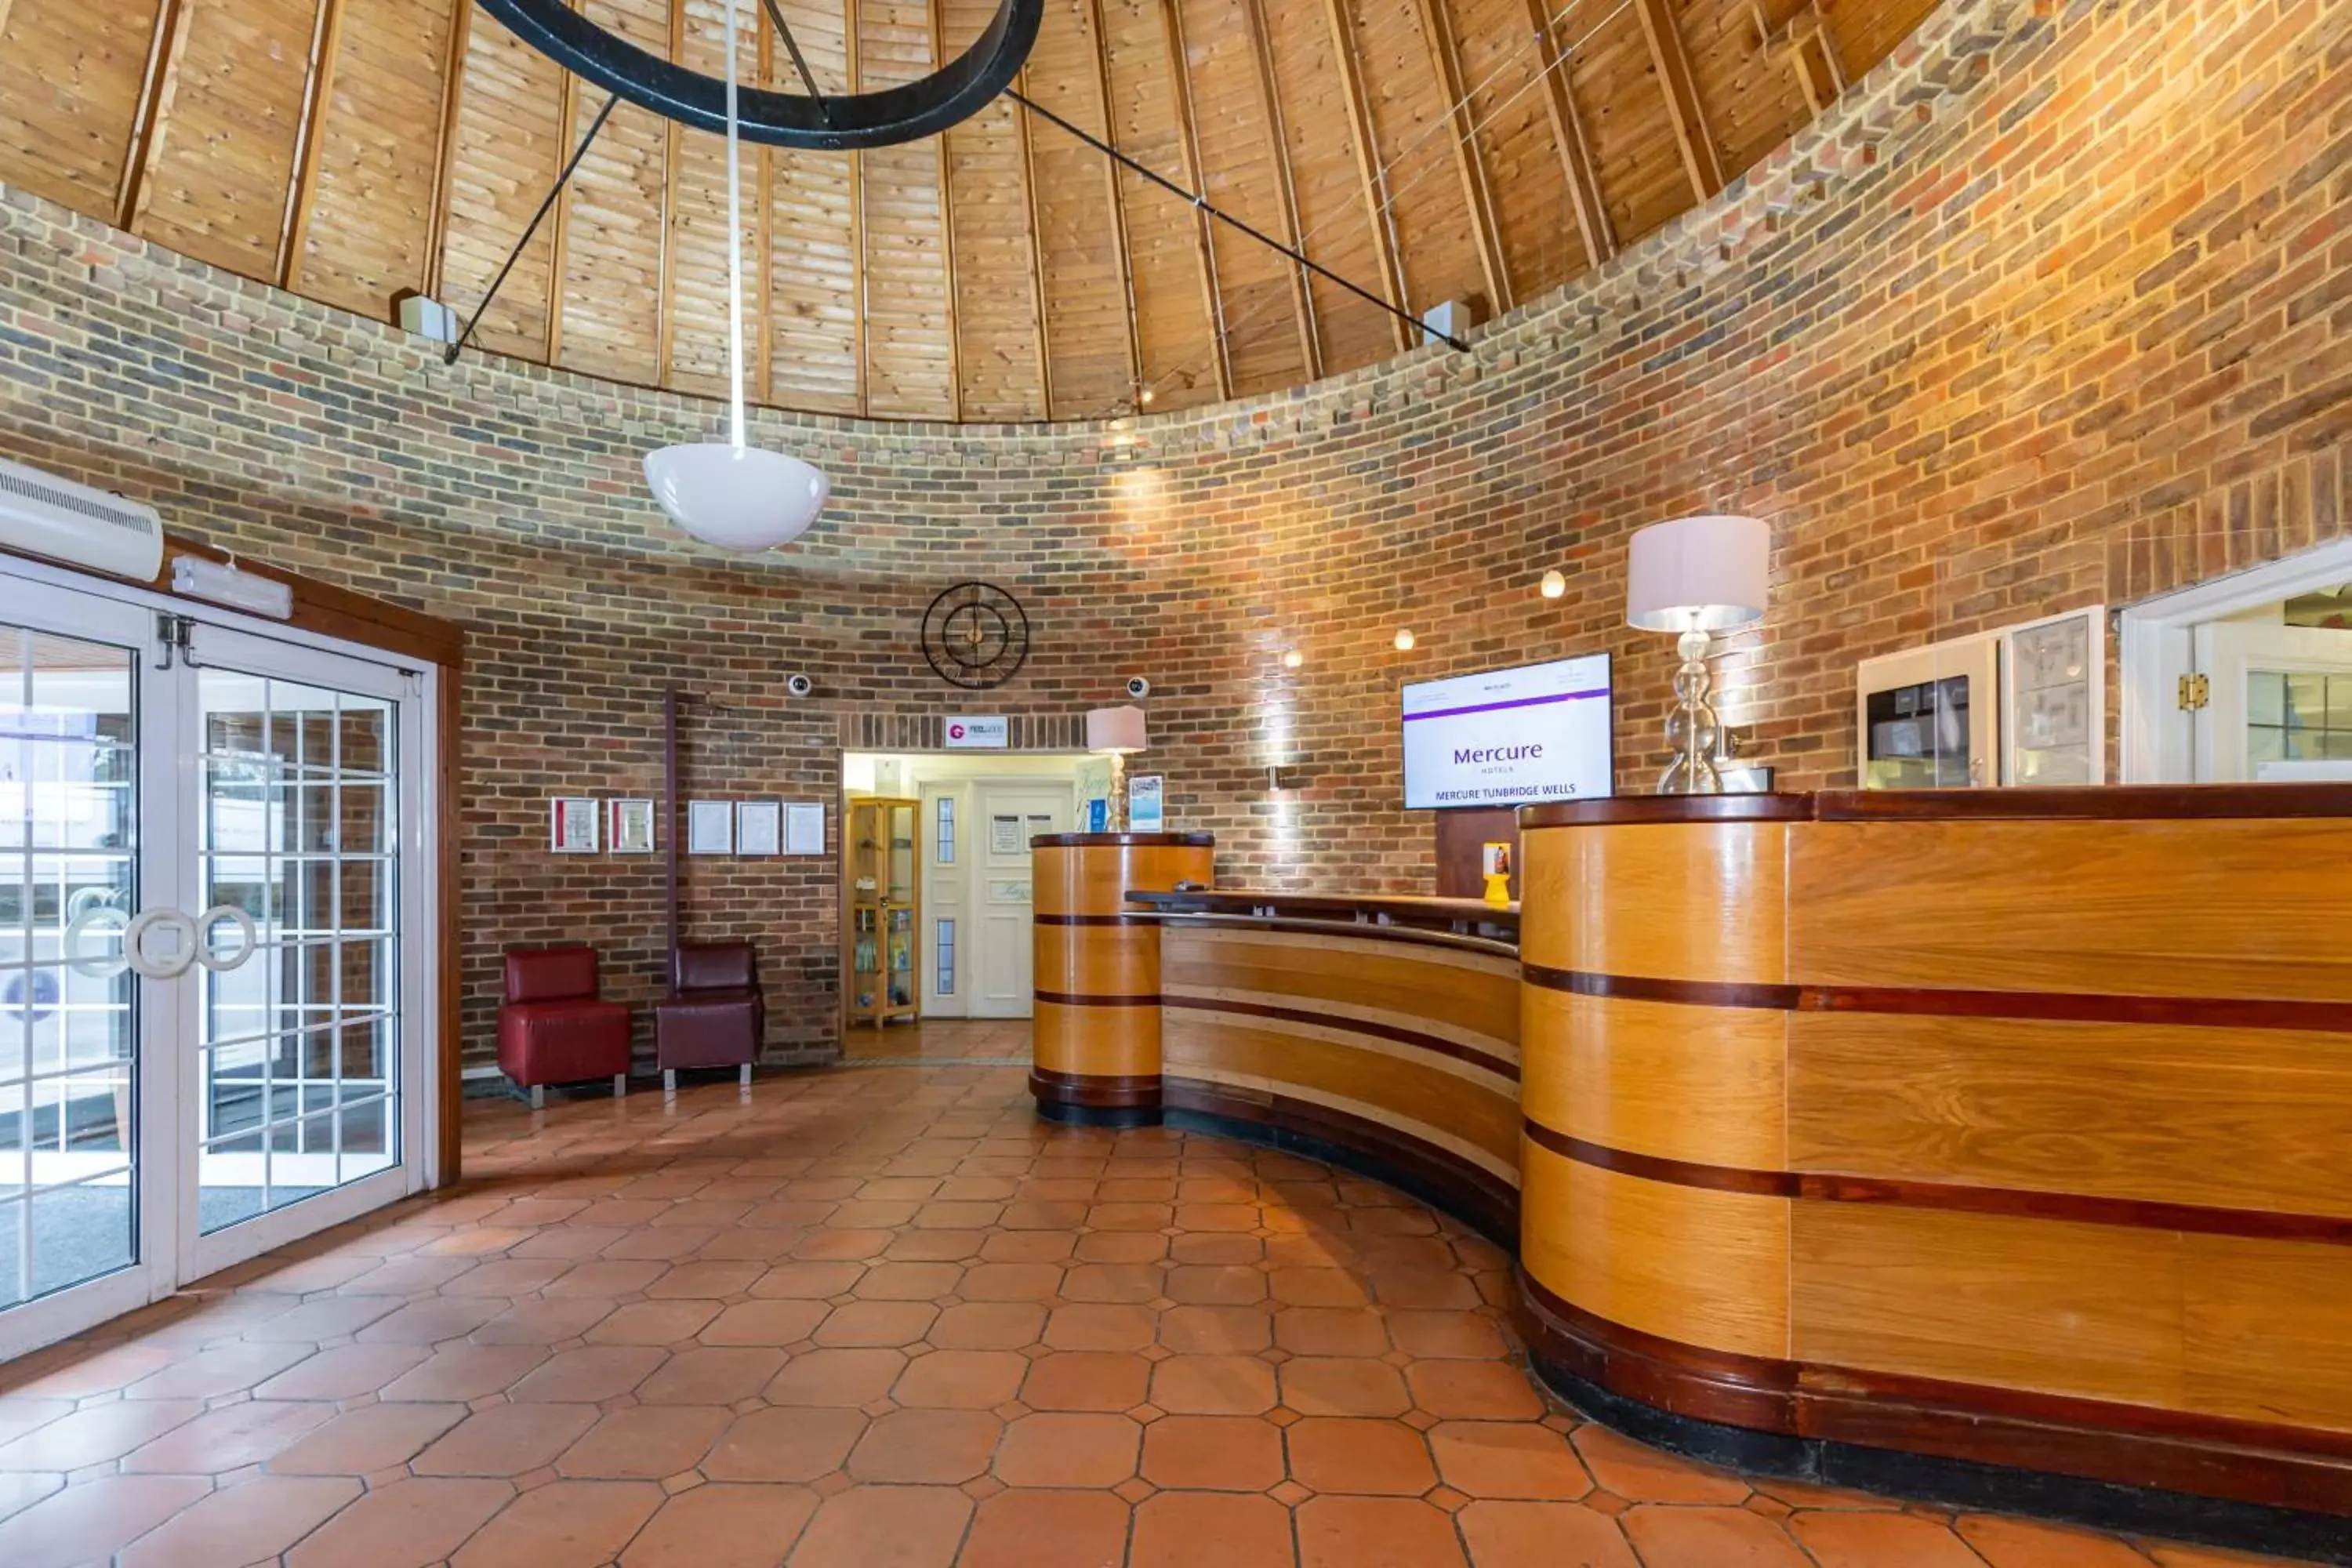 Lobby or reception, Lobby/Reception in Mercure Tunbridge Wells Hotel